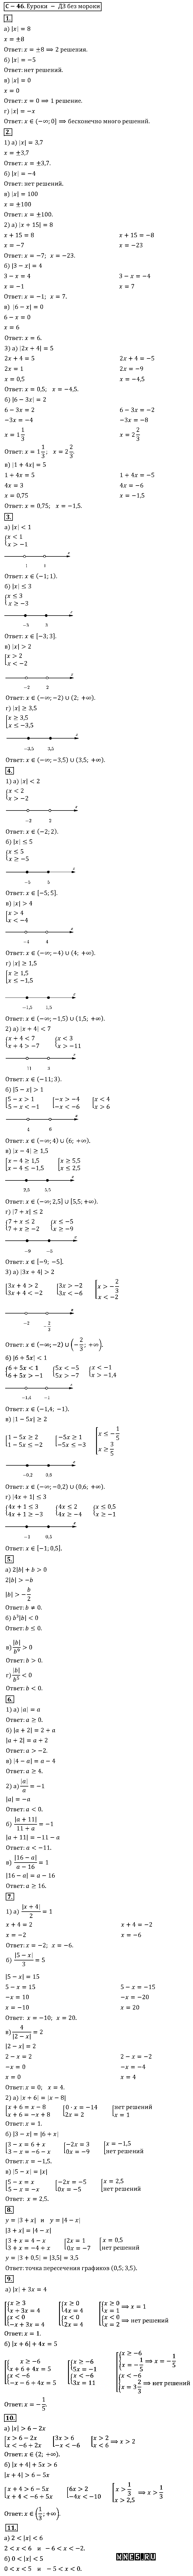 ГДЗ Алгебра 8 класс - С-46(с). Уравнения и неравенства, содержащие переменную под знаком модуля